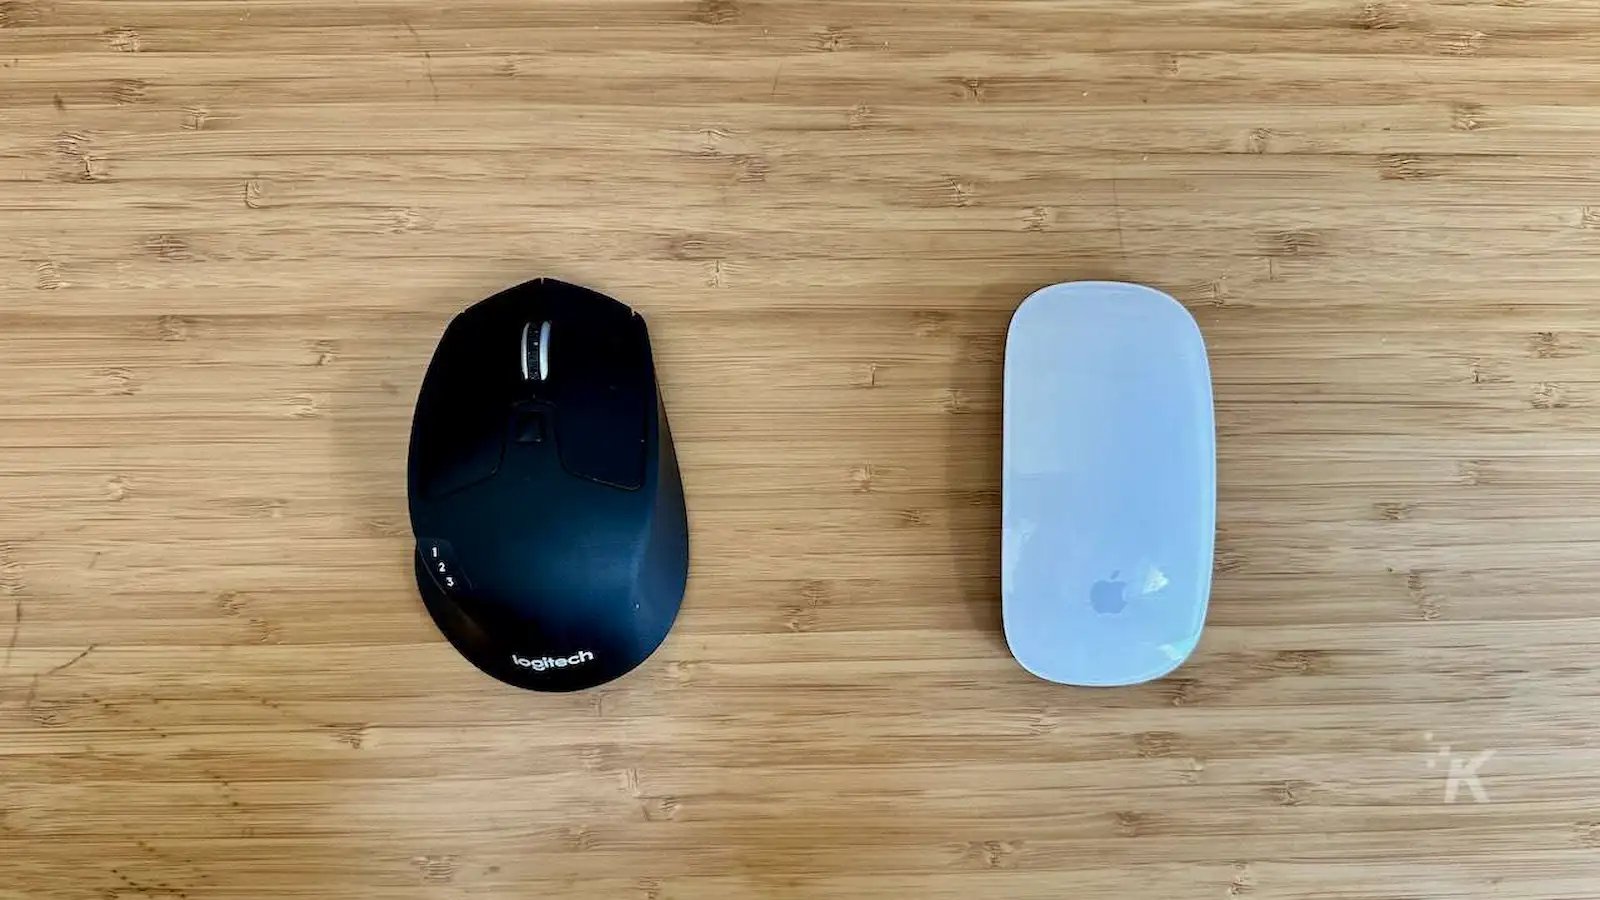 ロジクール マウス vs オフィス デスクのアップル マジック マウス